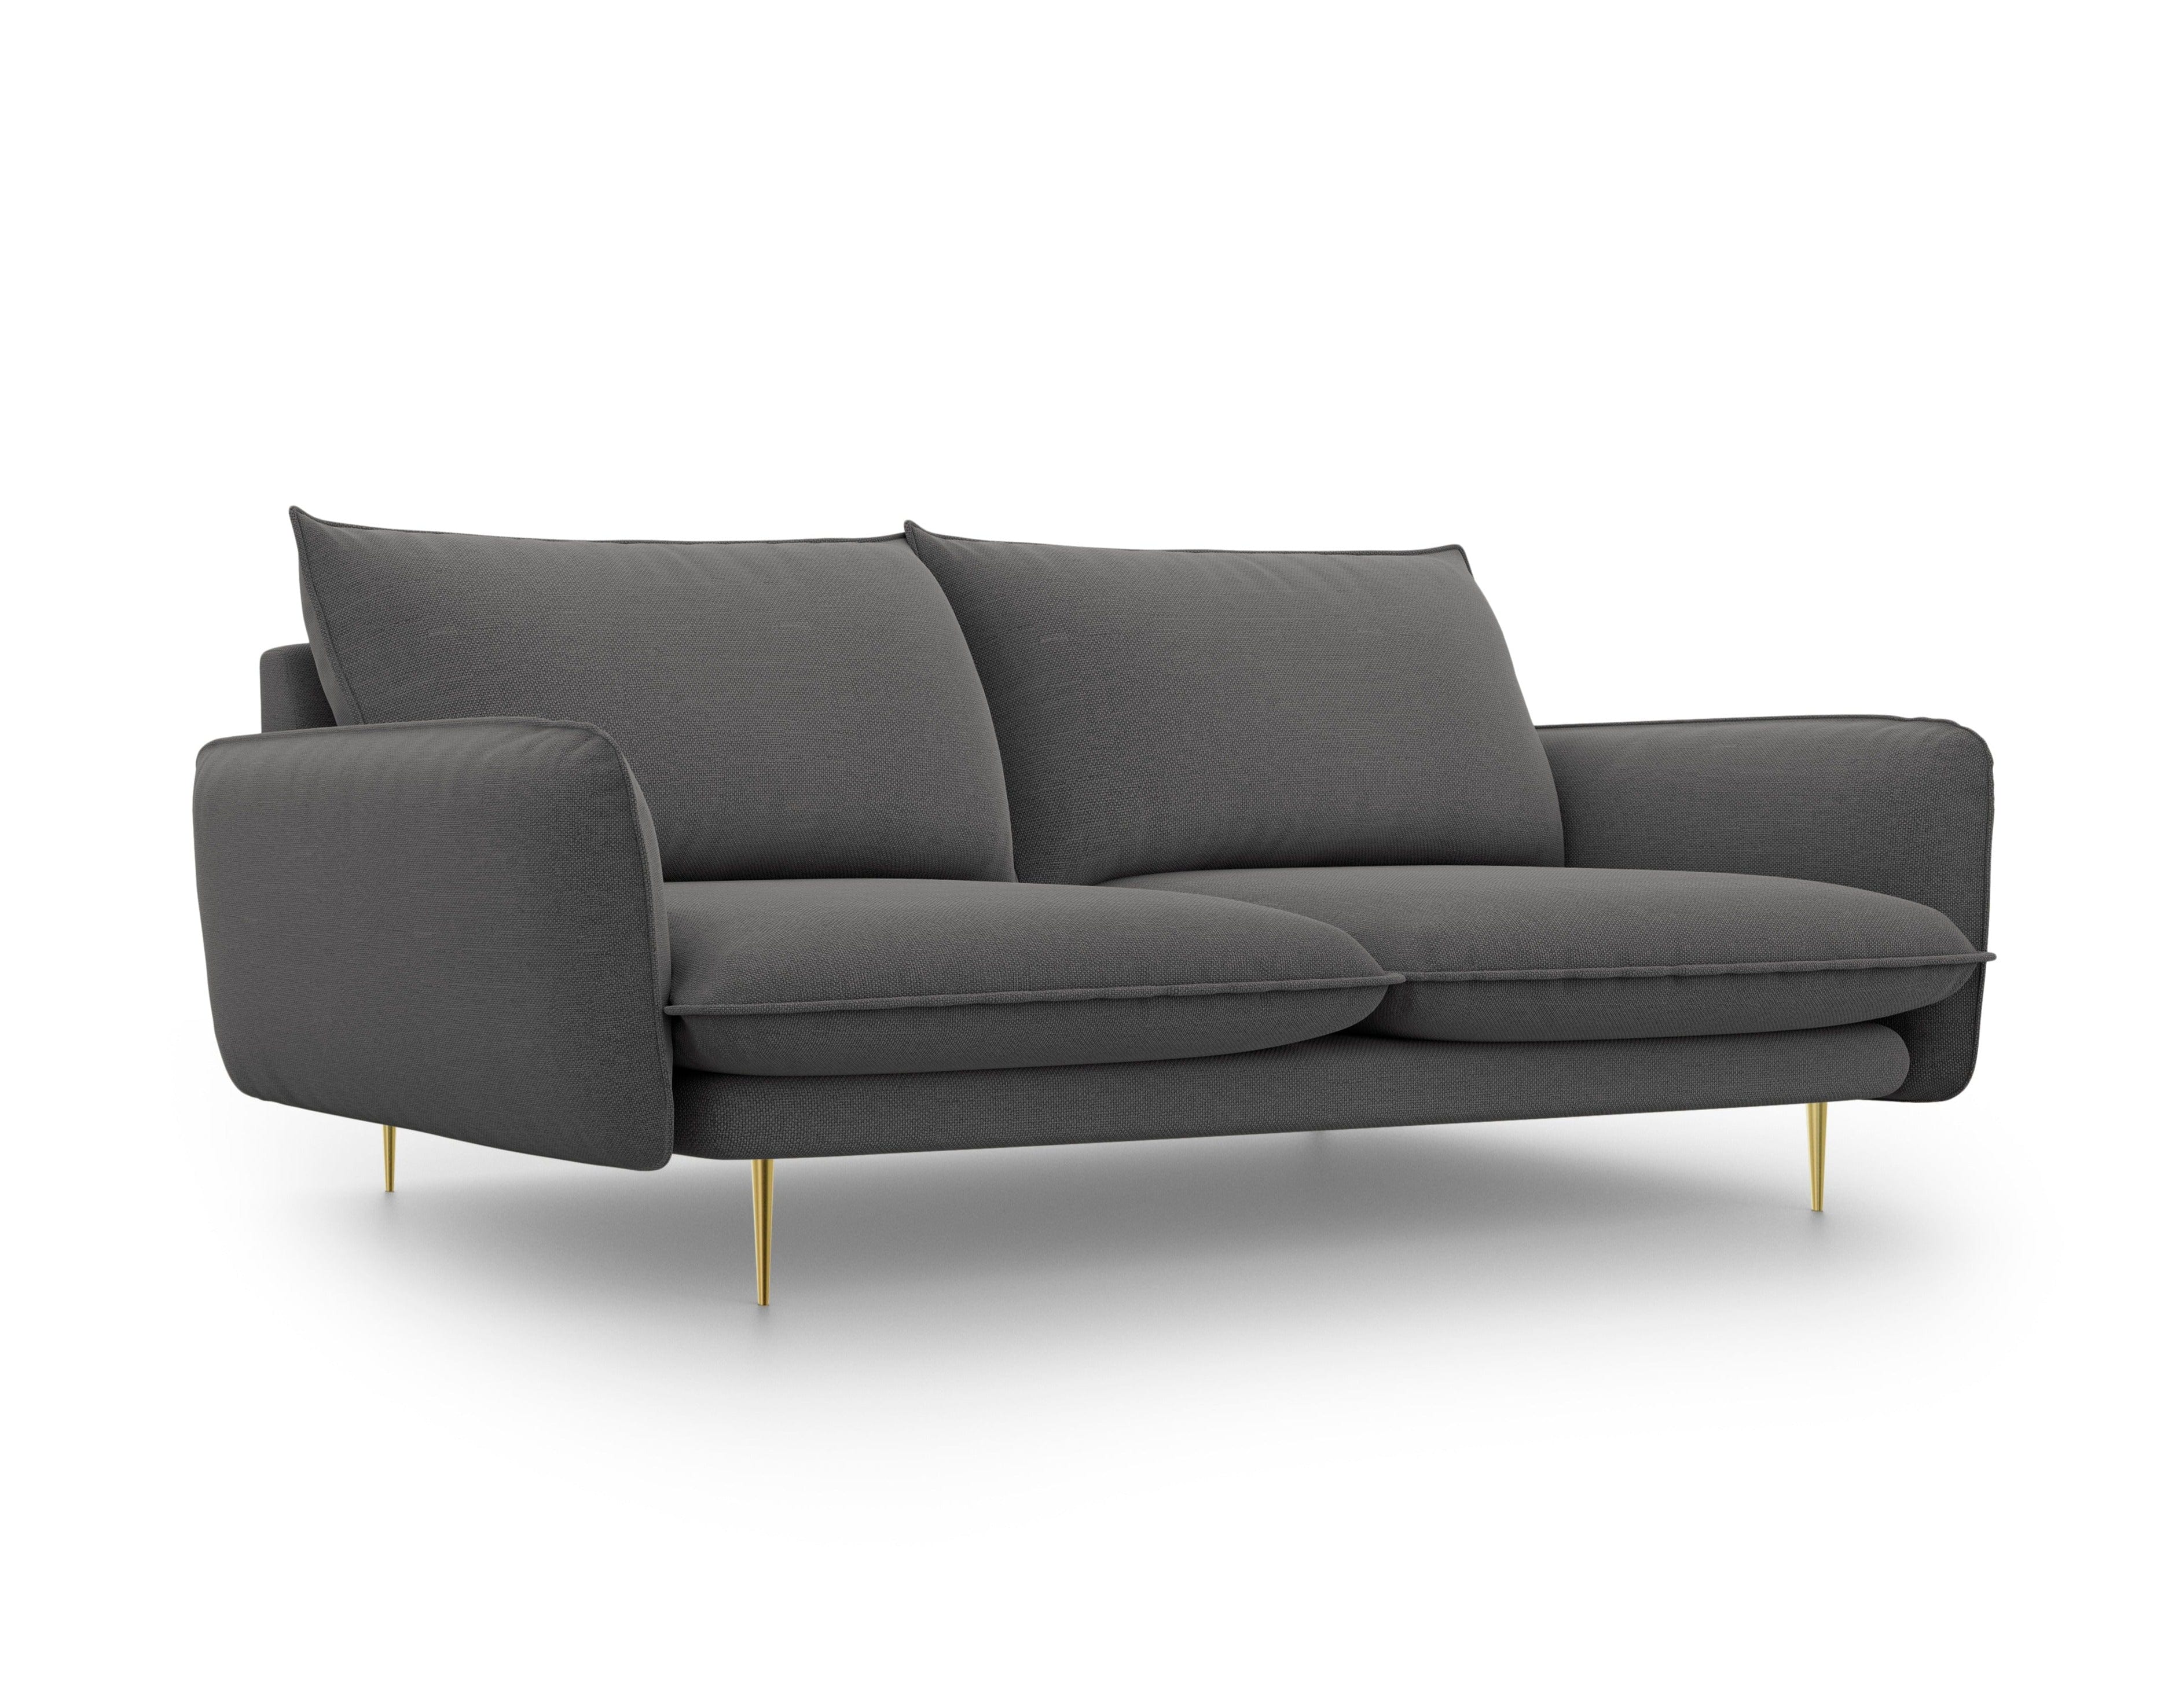 3-Sitzer-Sofa VIENNA dunkelgrau mit goldenem Untergestell